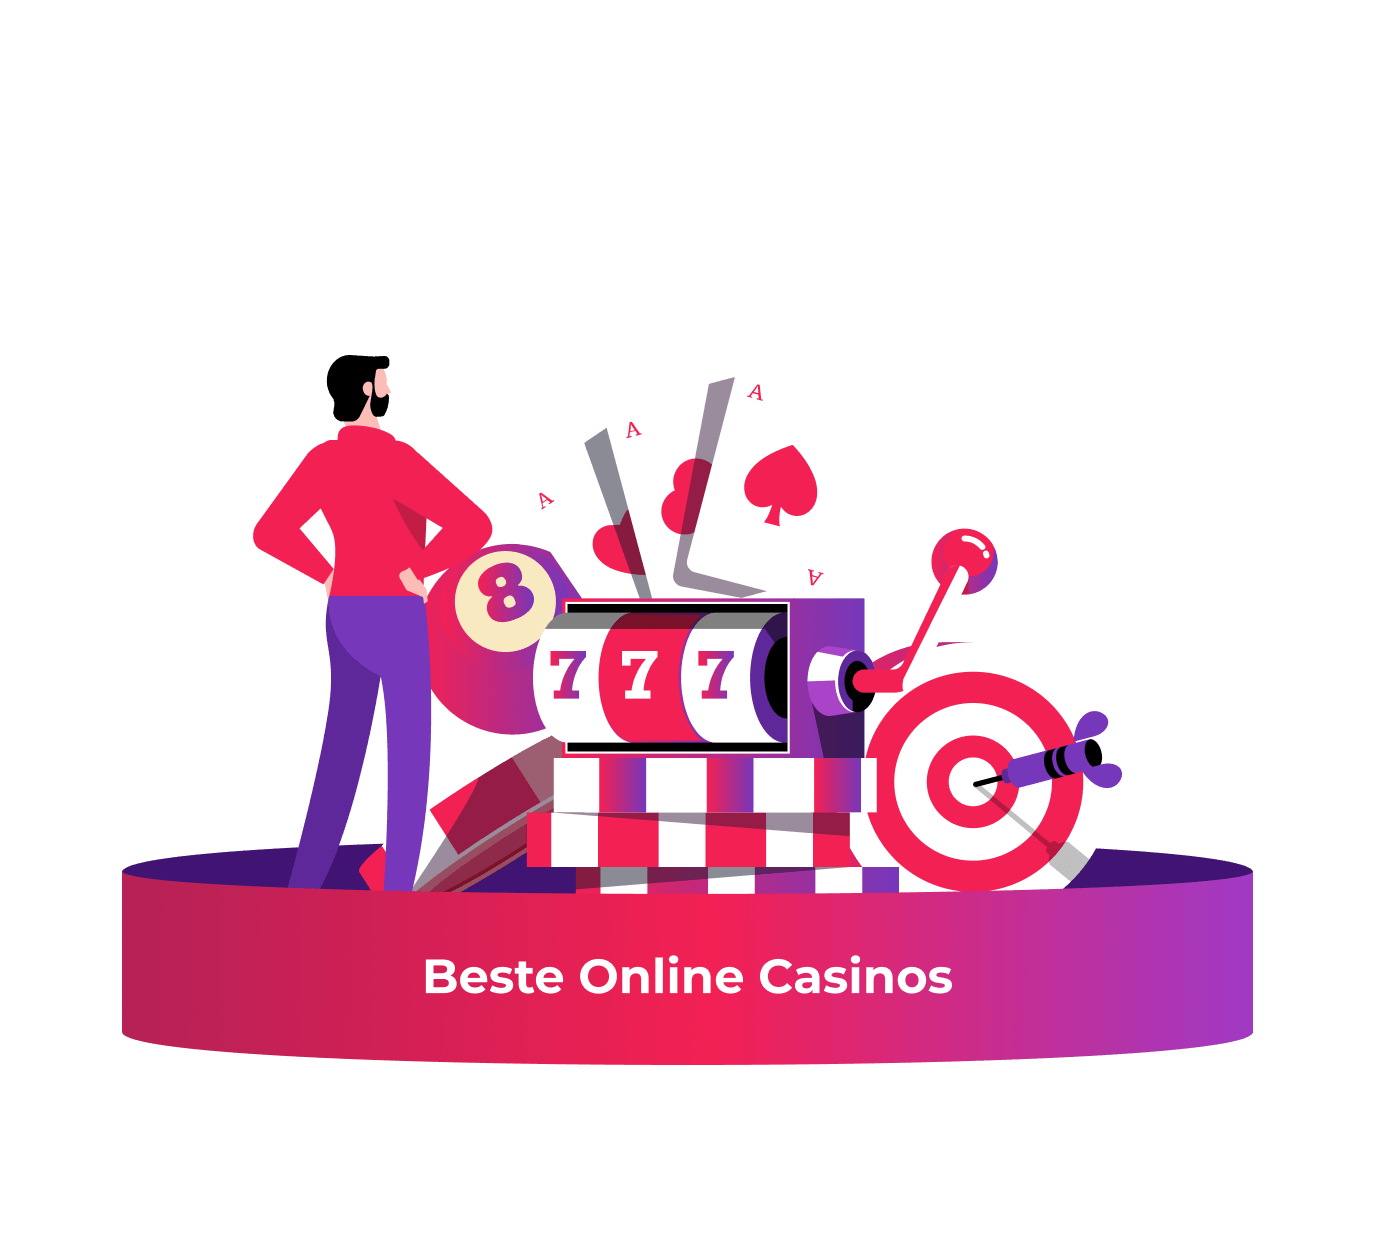 beste online casinos: Halten Sie es einfach